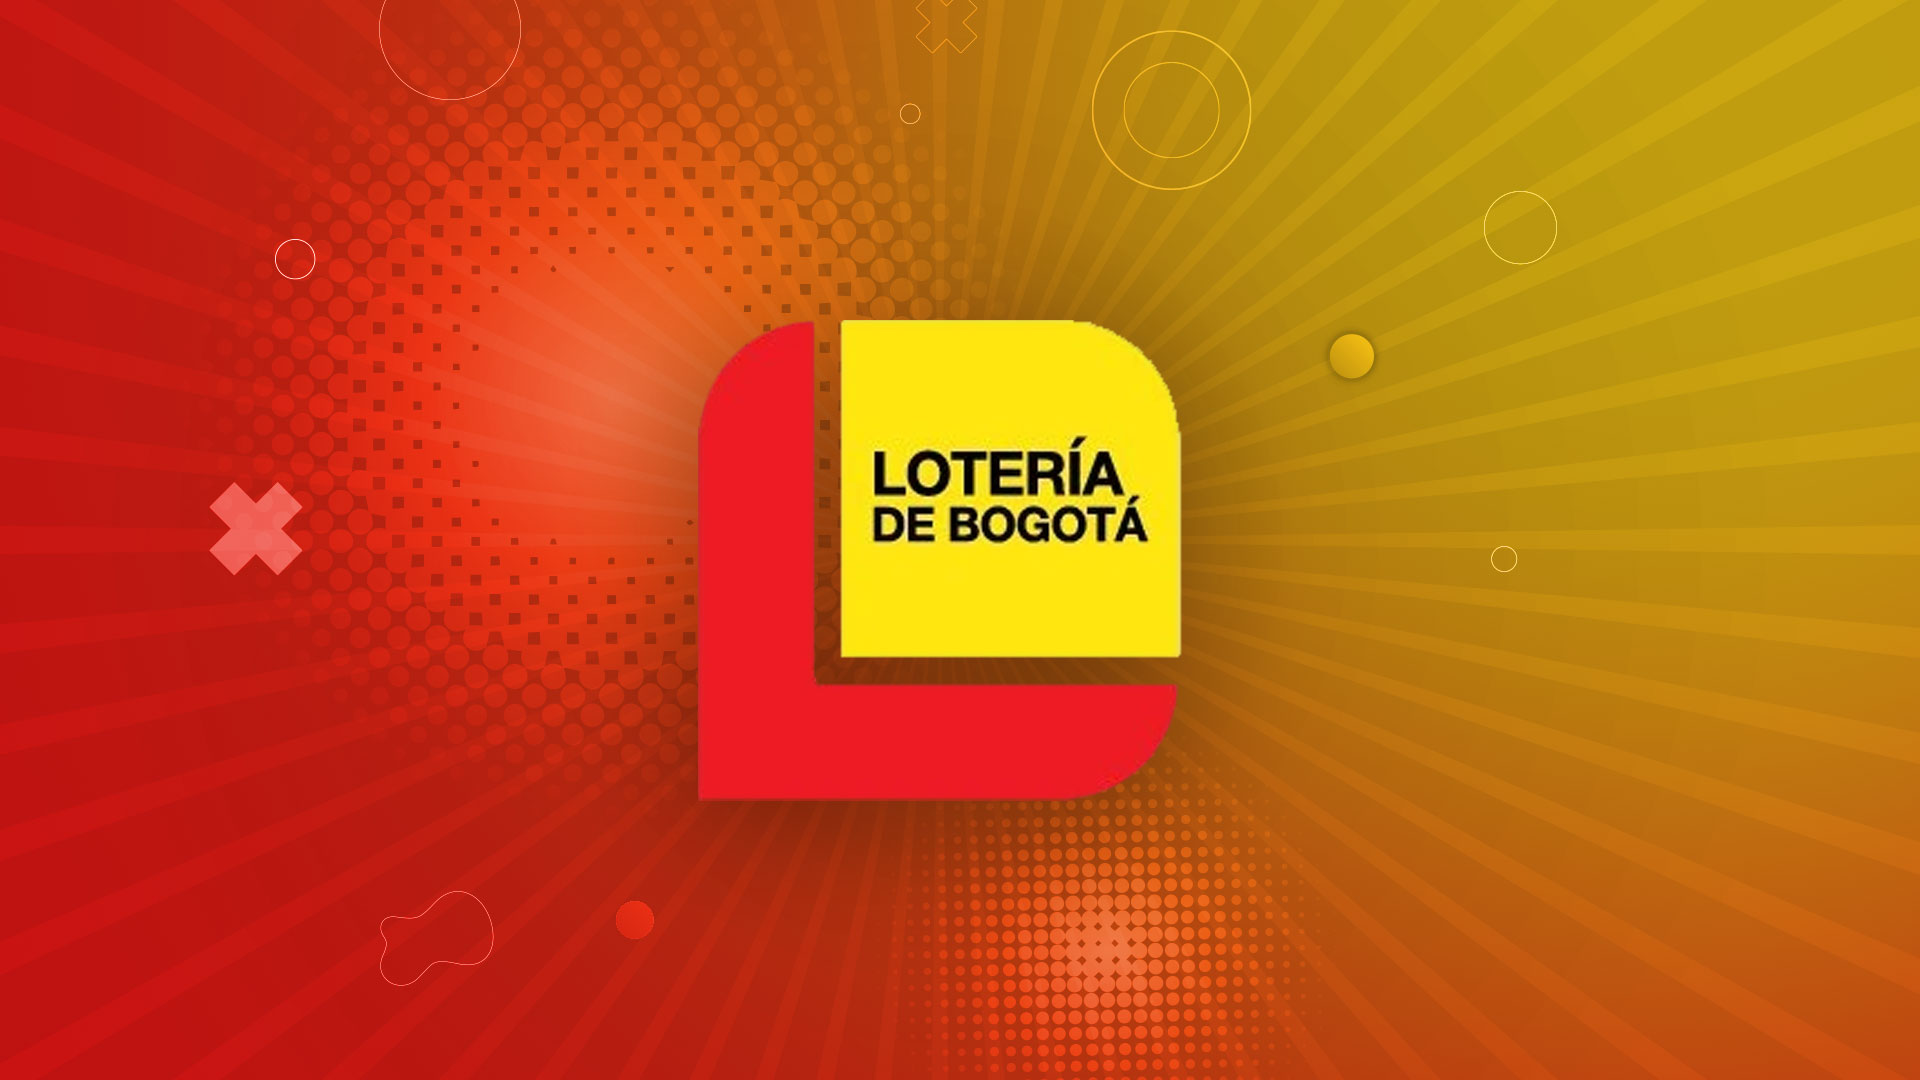 El precio de la Lotería de Bogotá es de 15.000 pesos el billete y 5.000 pesos la fracción (Infobae/Jovani Pérez)